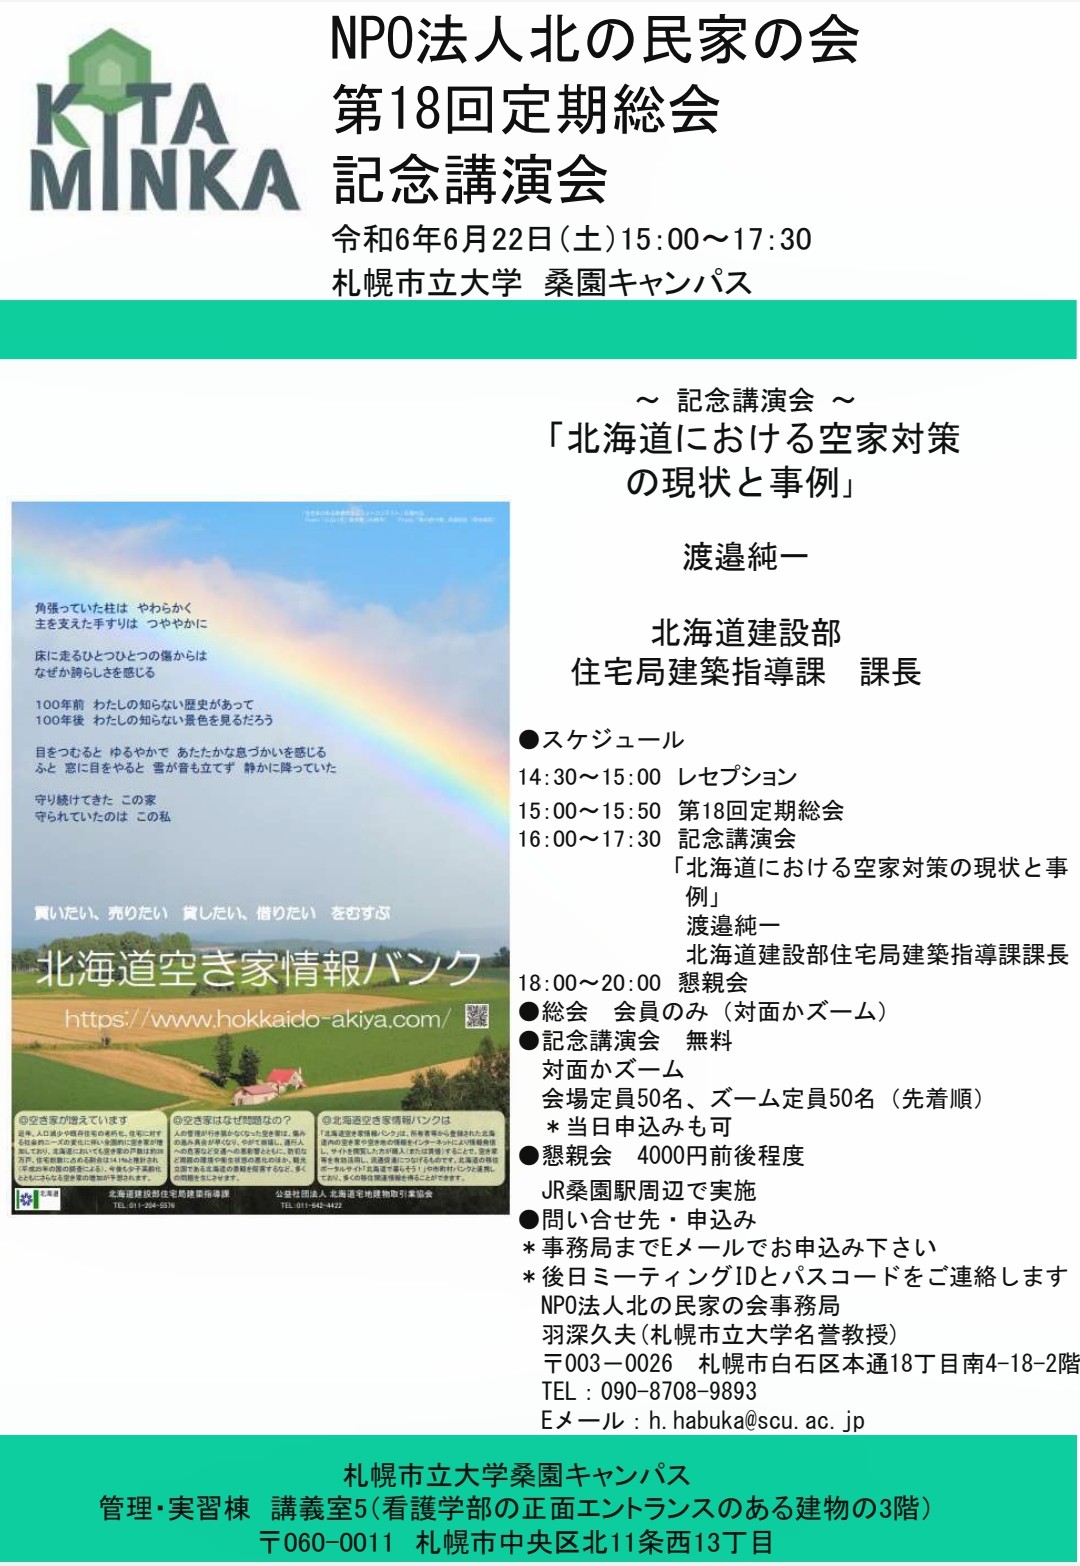 記念講演会「北海道における空き家対策の現状と事例」のお知らせ